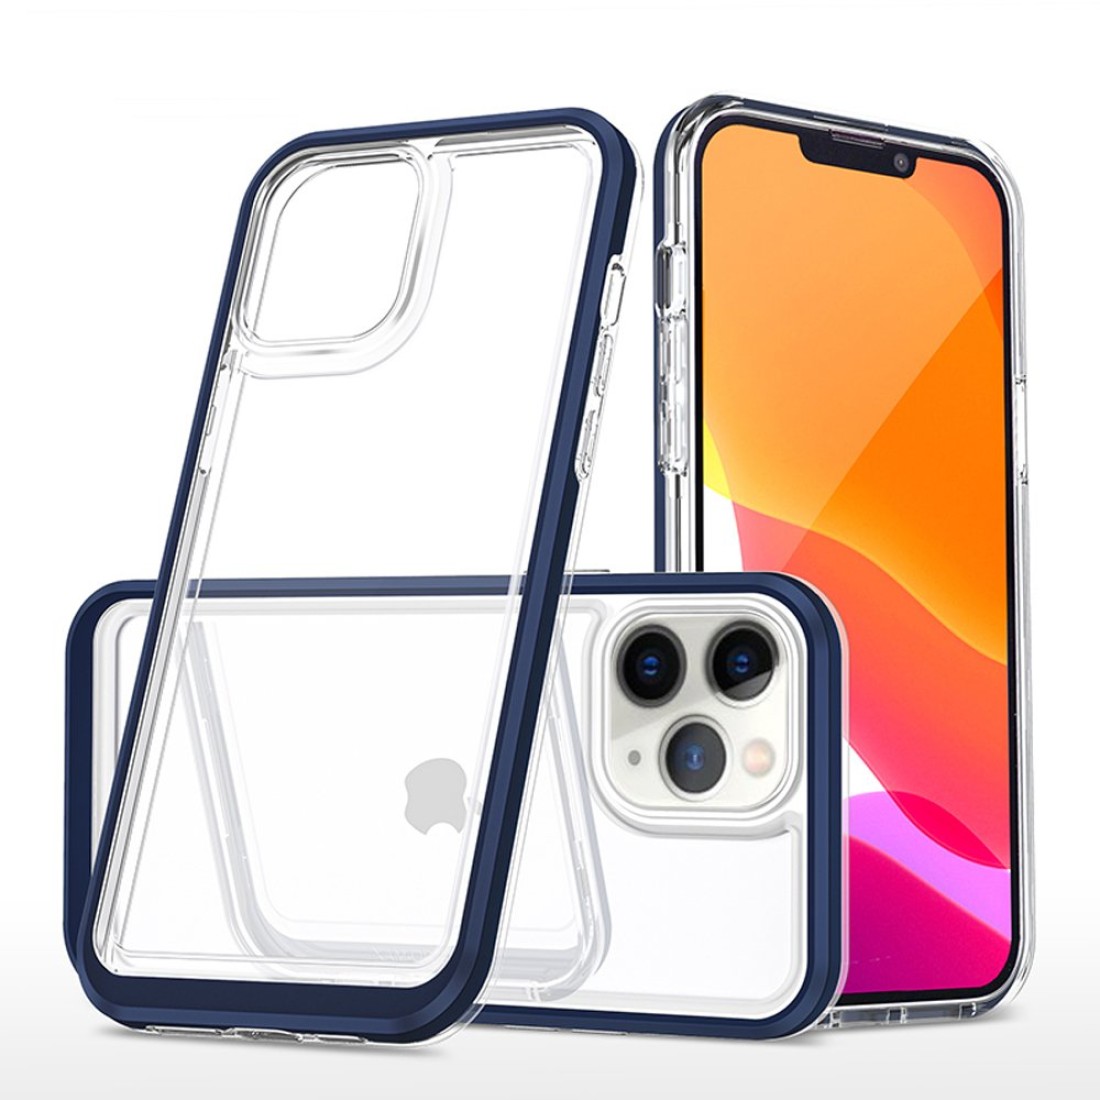 Apple iPhone 11 Pro Kılıf Lims Silikon - Mavi